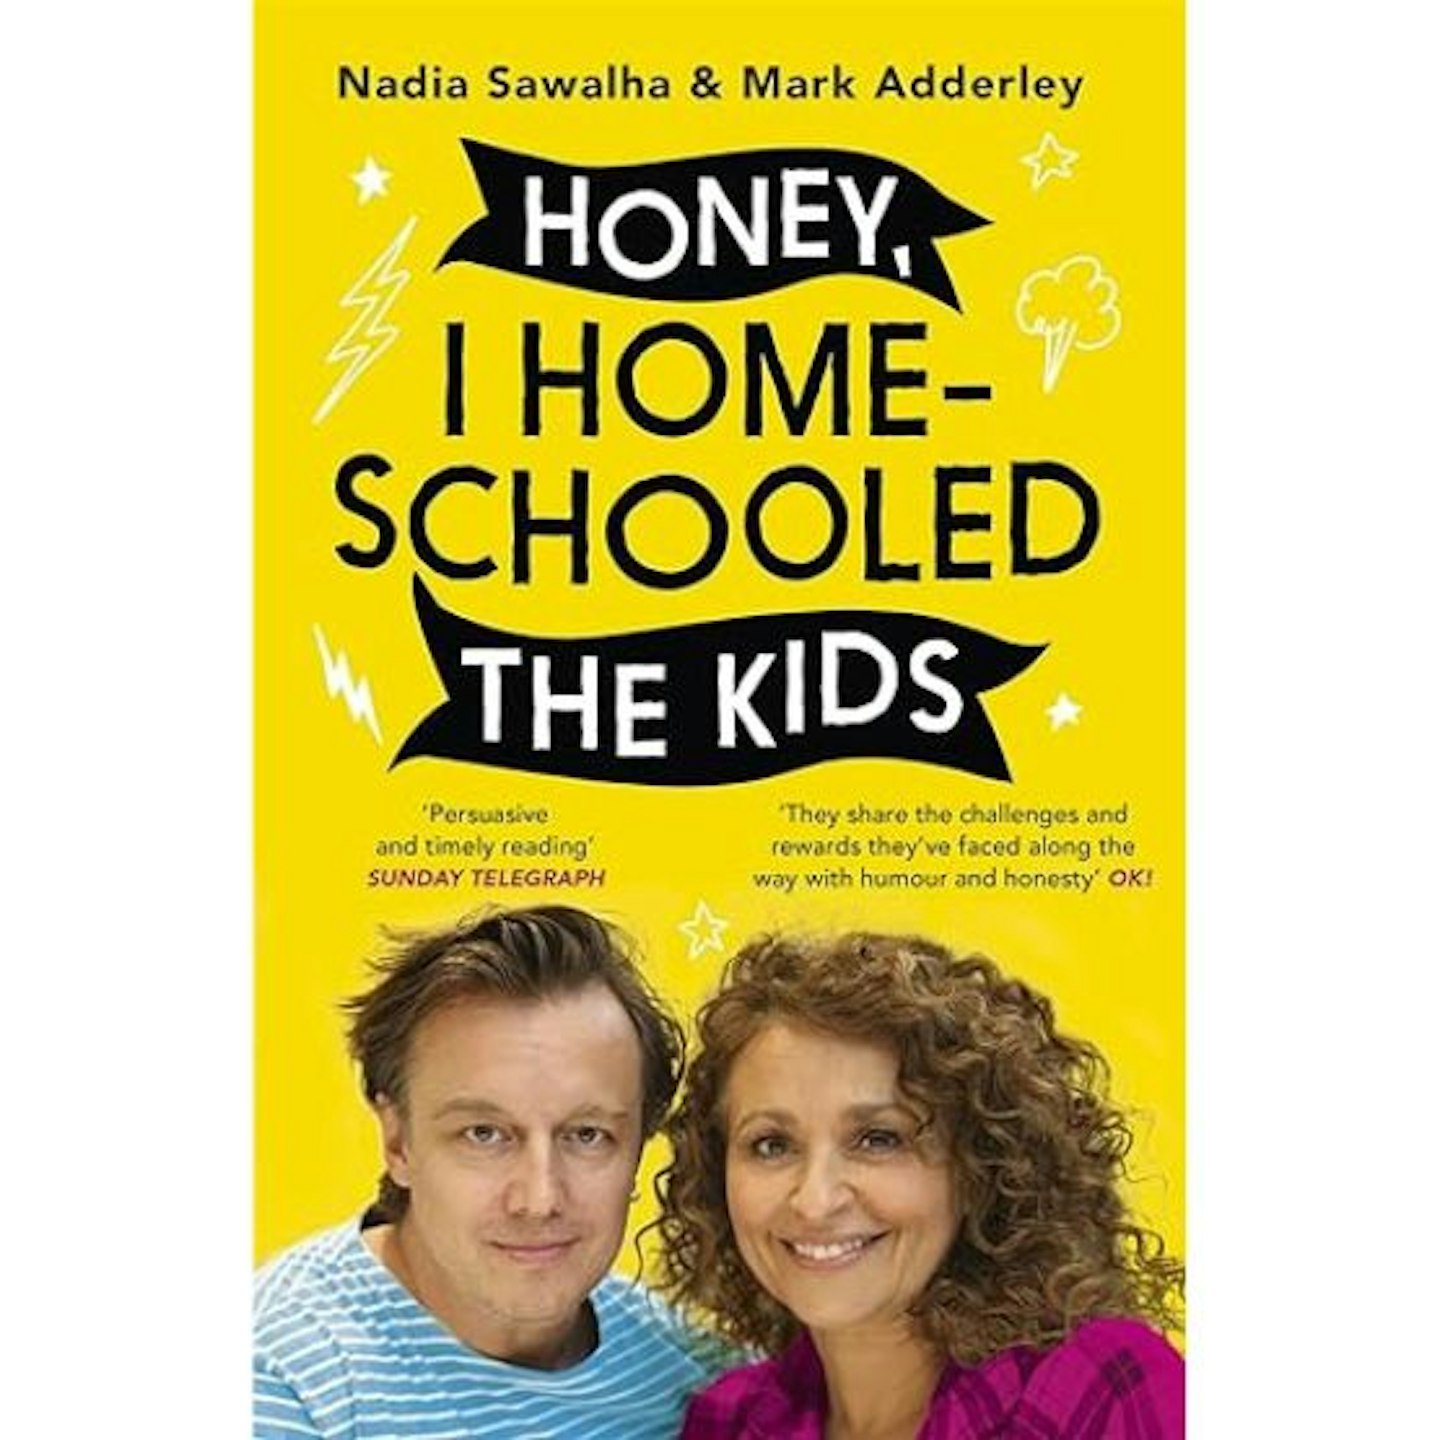 Honey, I Homeschooled the Kids, NaDia Sawalh and Mark Adderley book